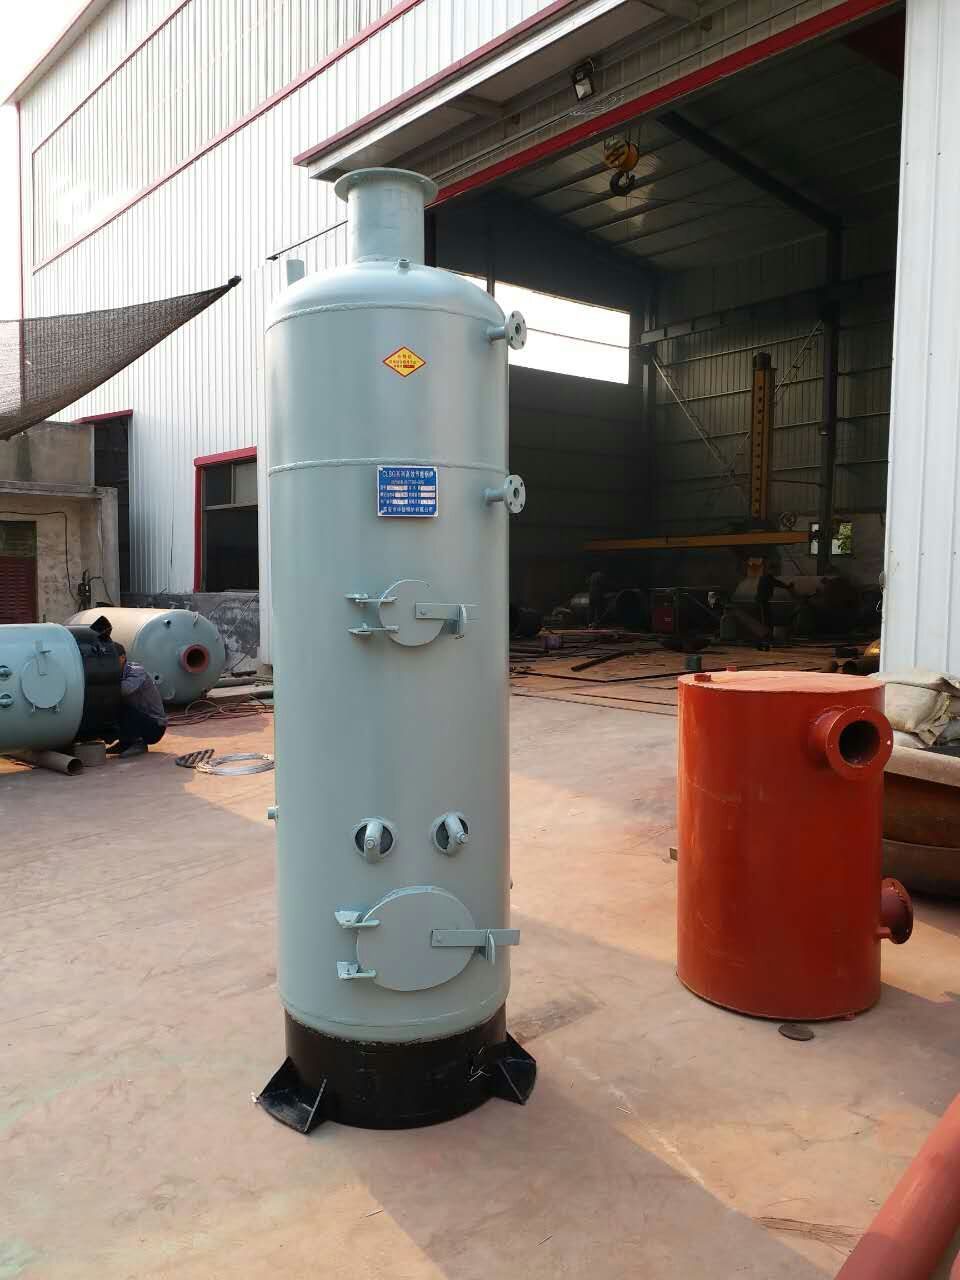 液化气蒸馒头锅炉 液化气蒸凉皮锅炉厂家